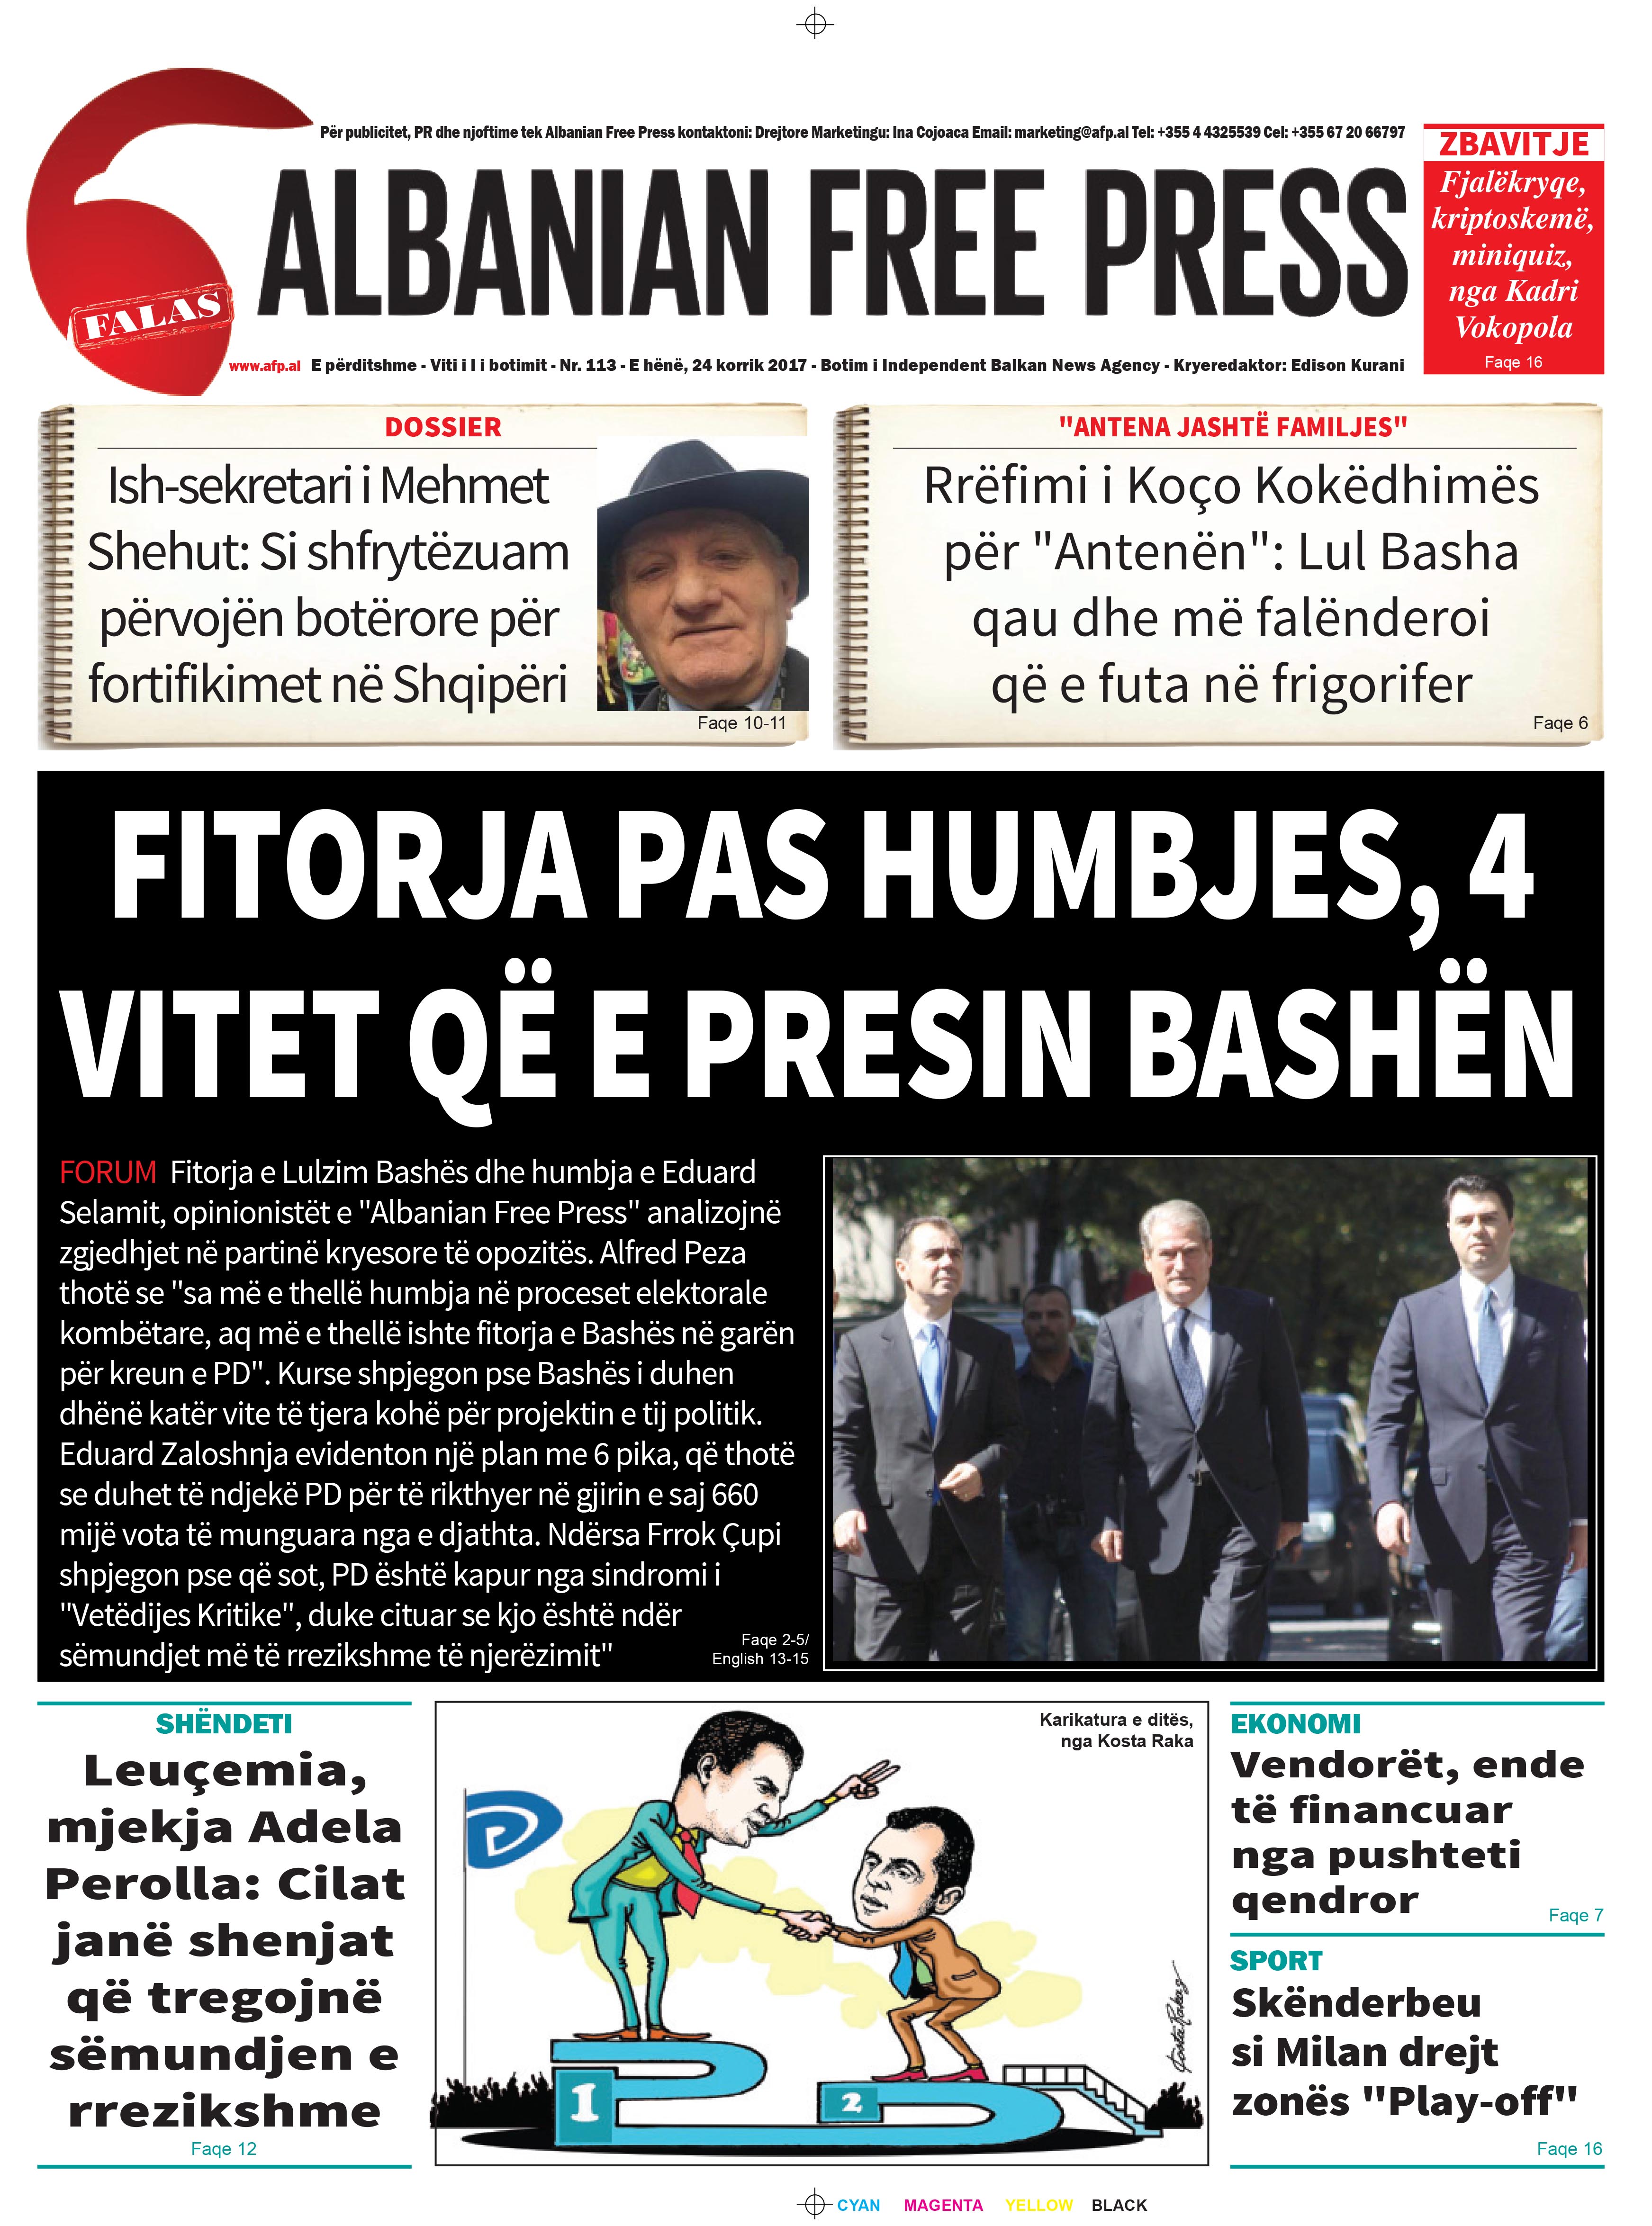 Lexoni sot 24 korrik 2017 në gazetën e përditshme “Albanian Free Press”